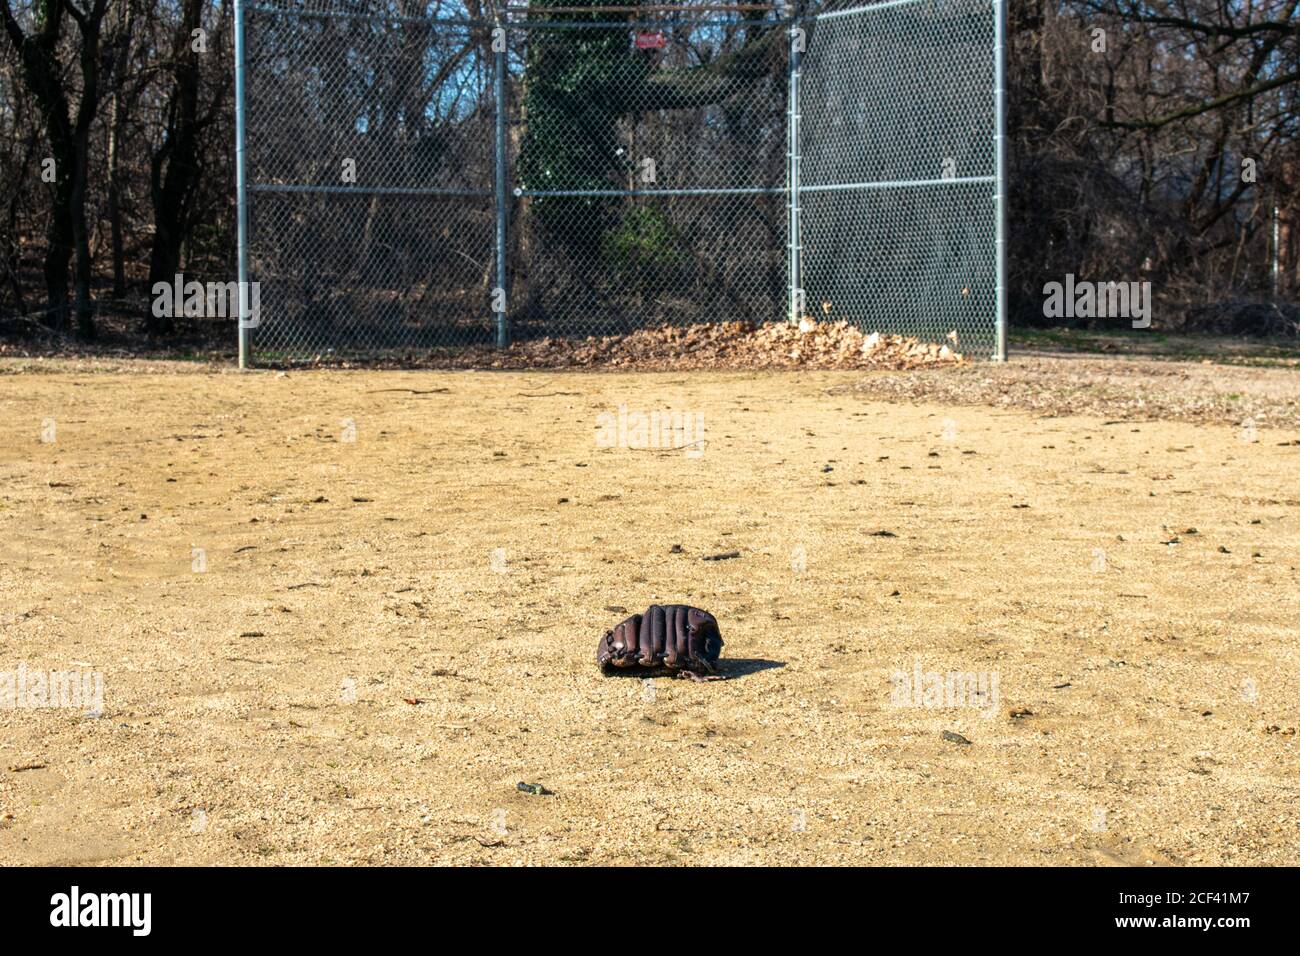 Ein vergessener Baseballhandschuh auf einem Sand-Baseballfeld Stockfoto